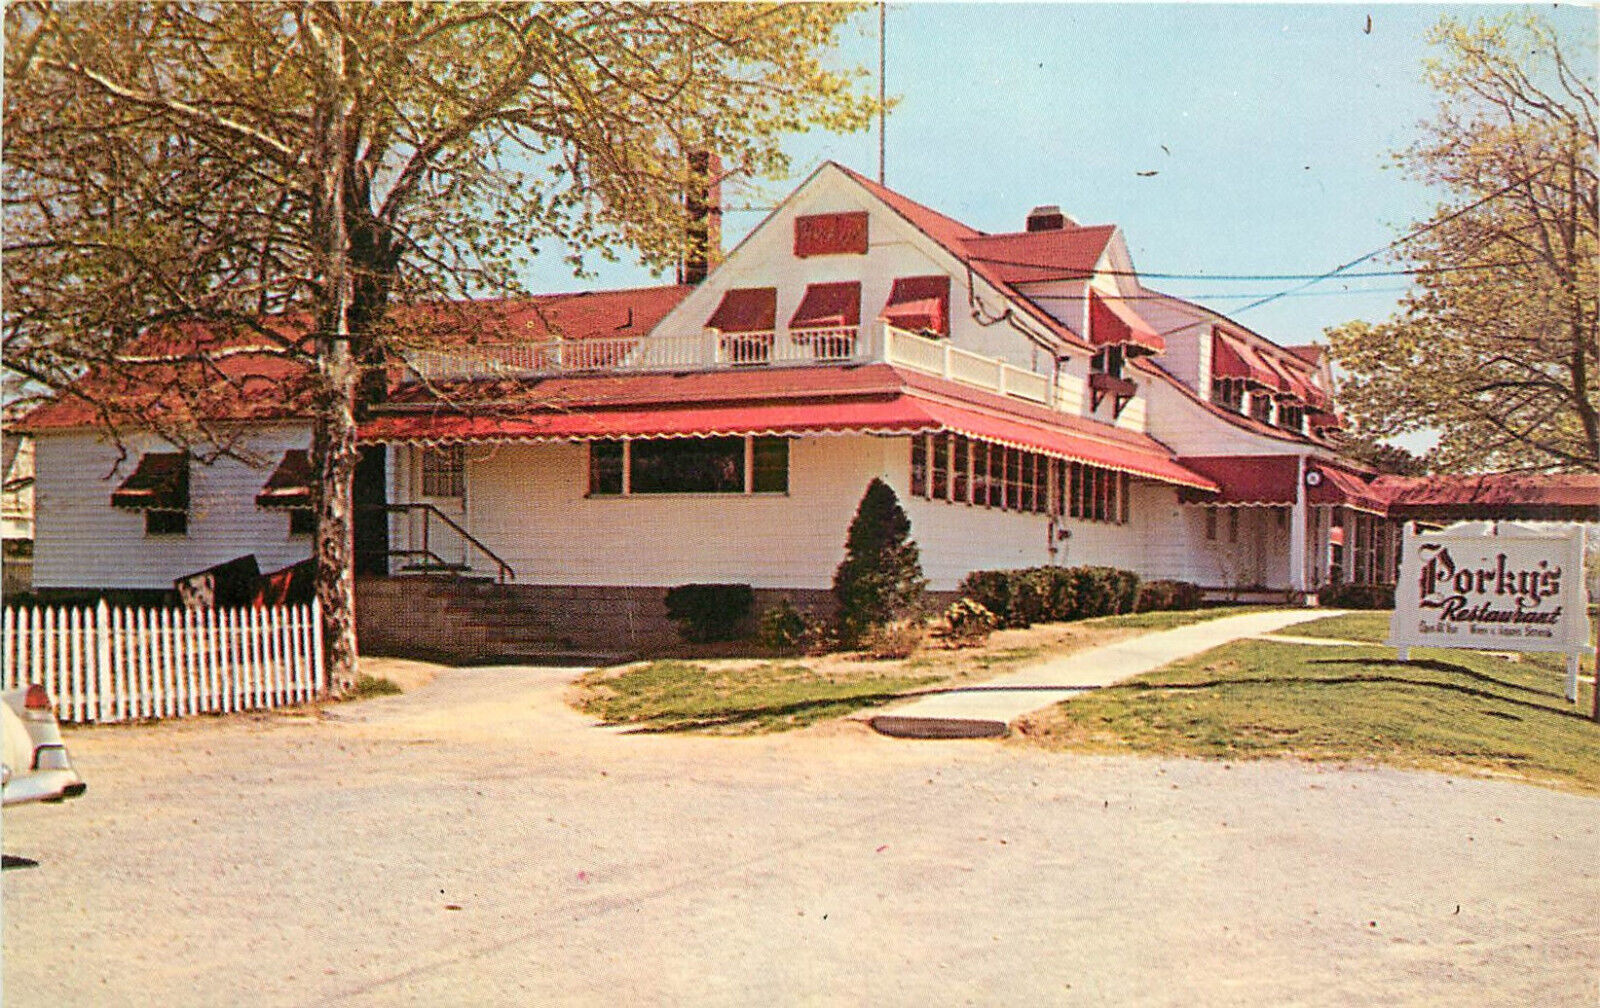 Postcard Porky's North Road Restaurant Greenport Long island NY 